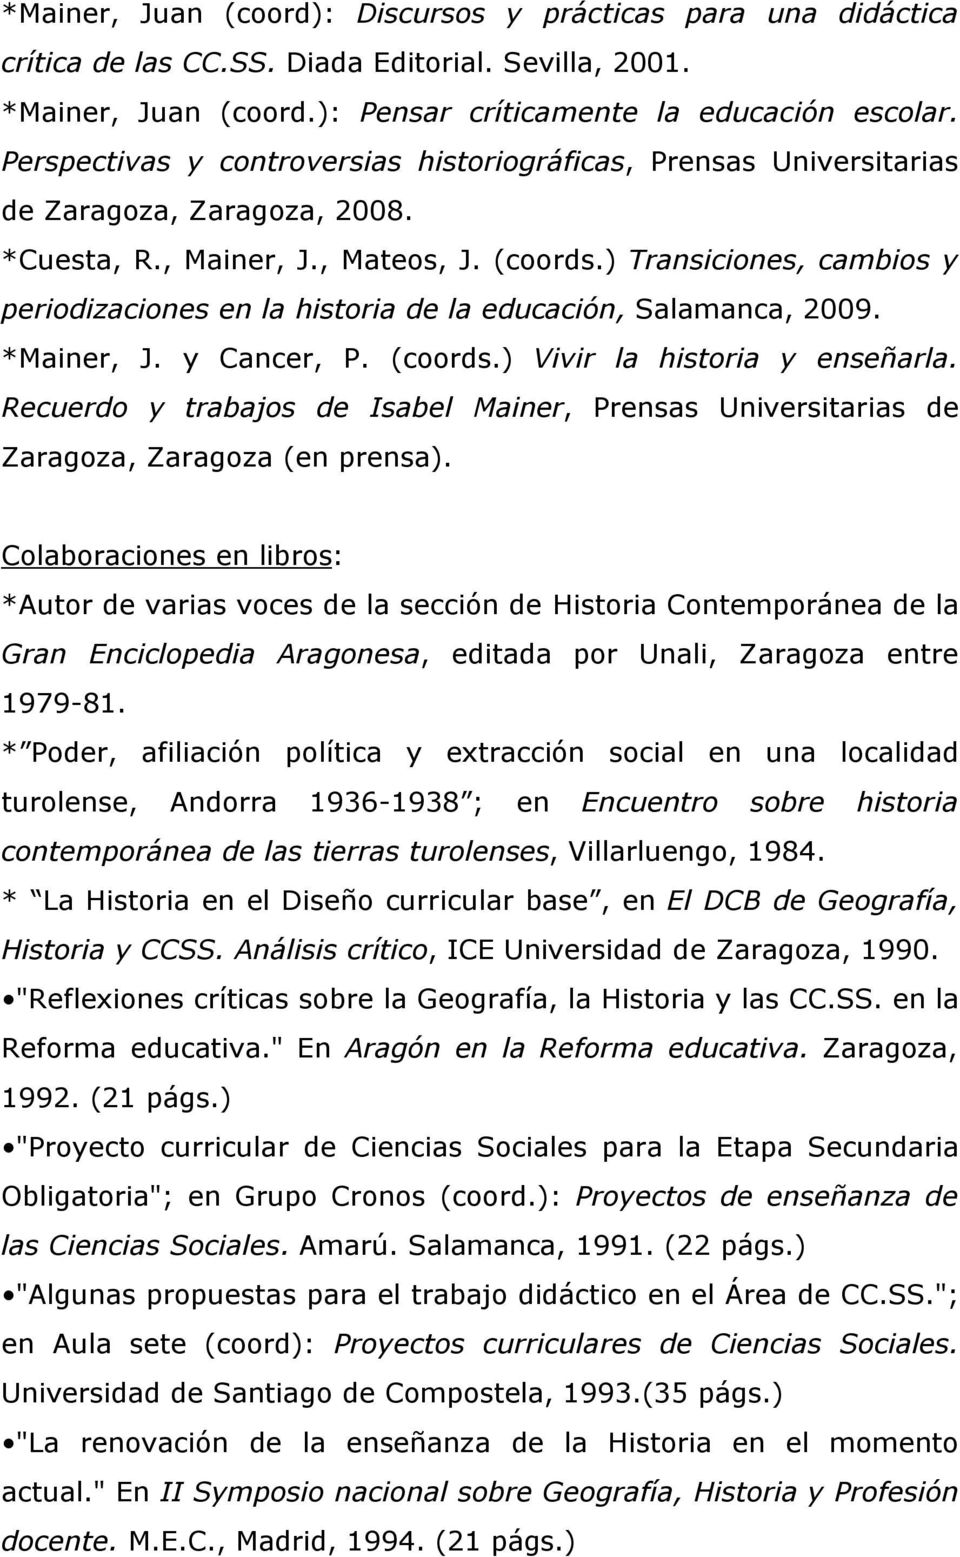 ) Transiciones, cambios y periodizaciones en la historia de la educación, Salamanca, 2009. *Mainer, J. y Cancer, P. (coords.) Vivir la historia y enseñarla.